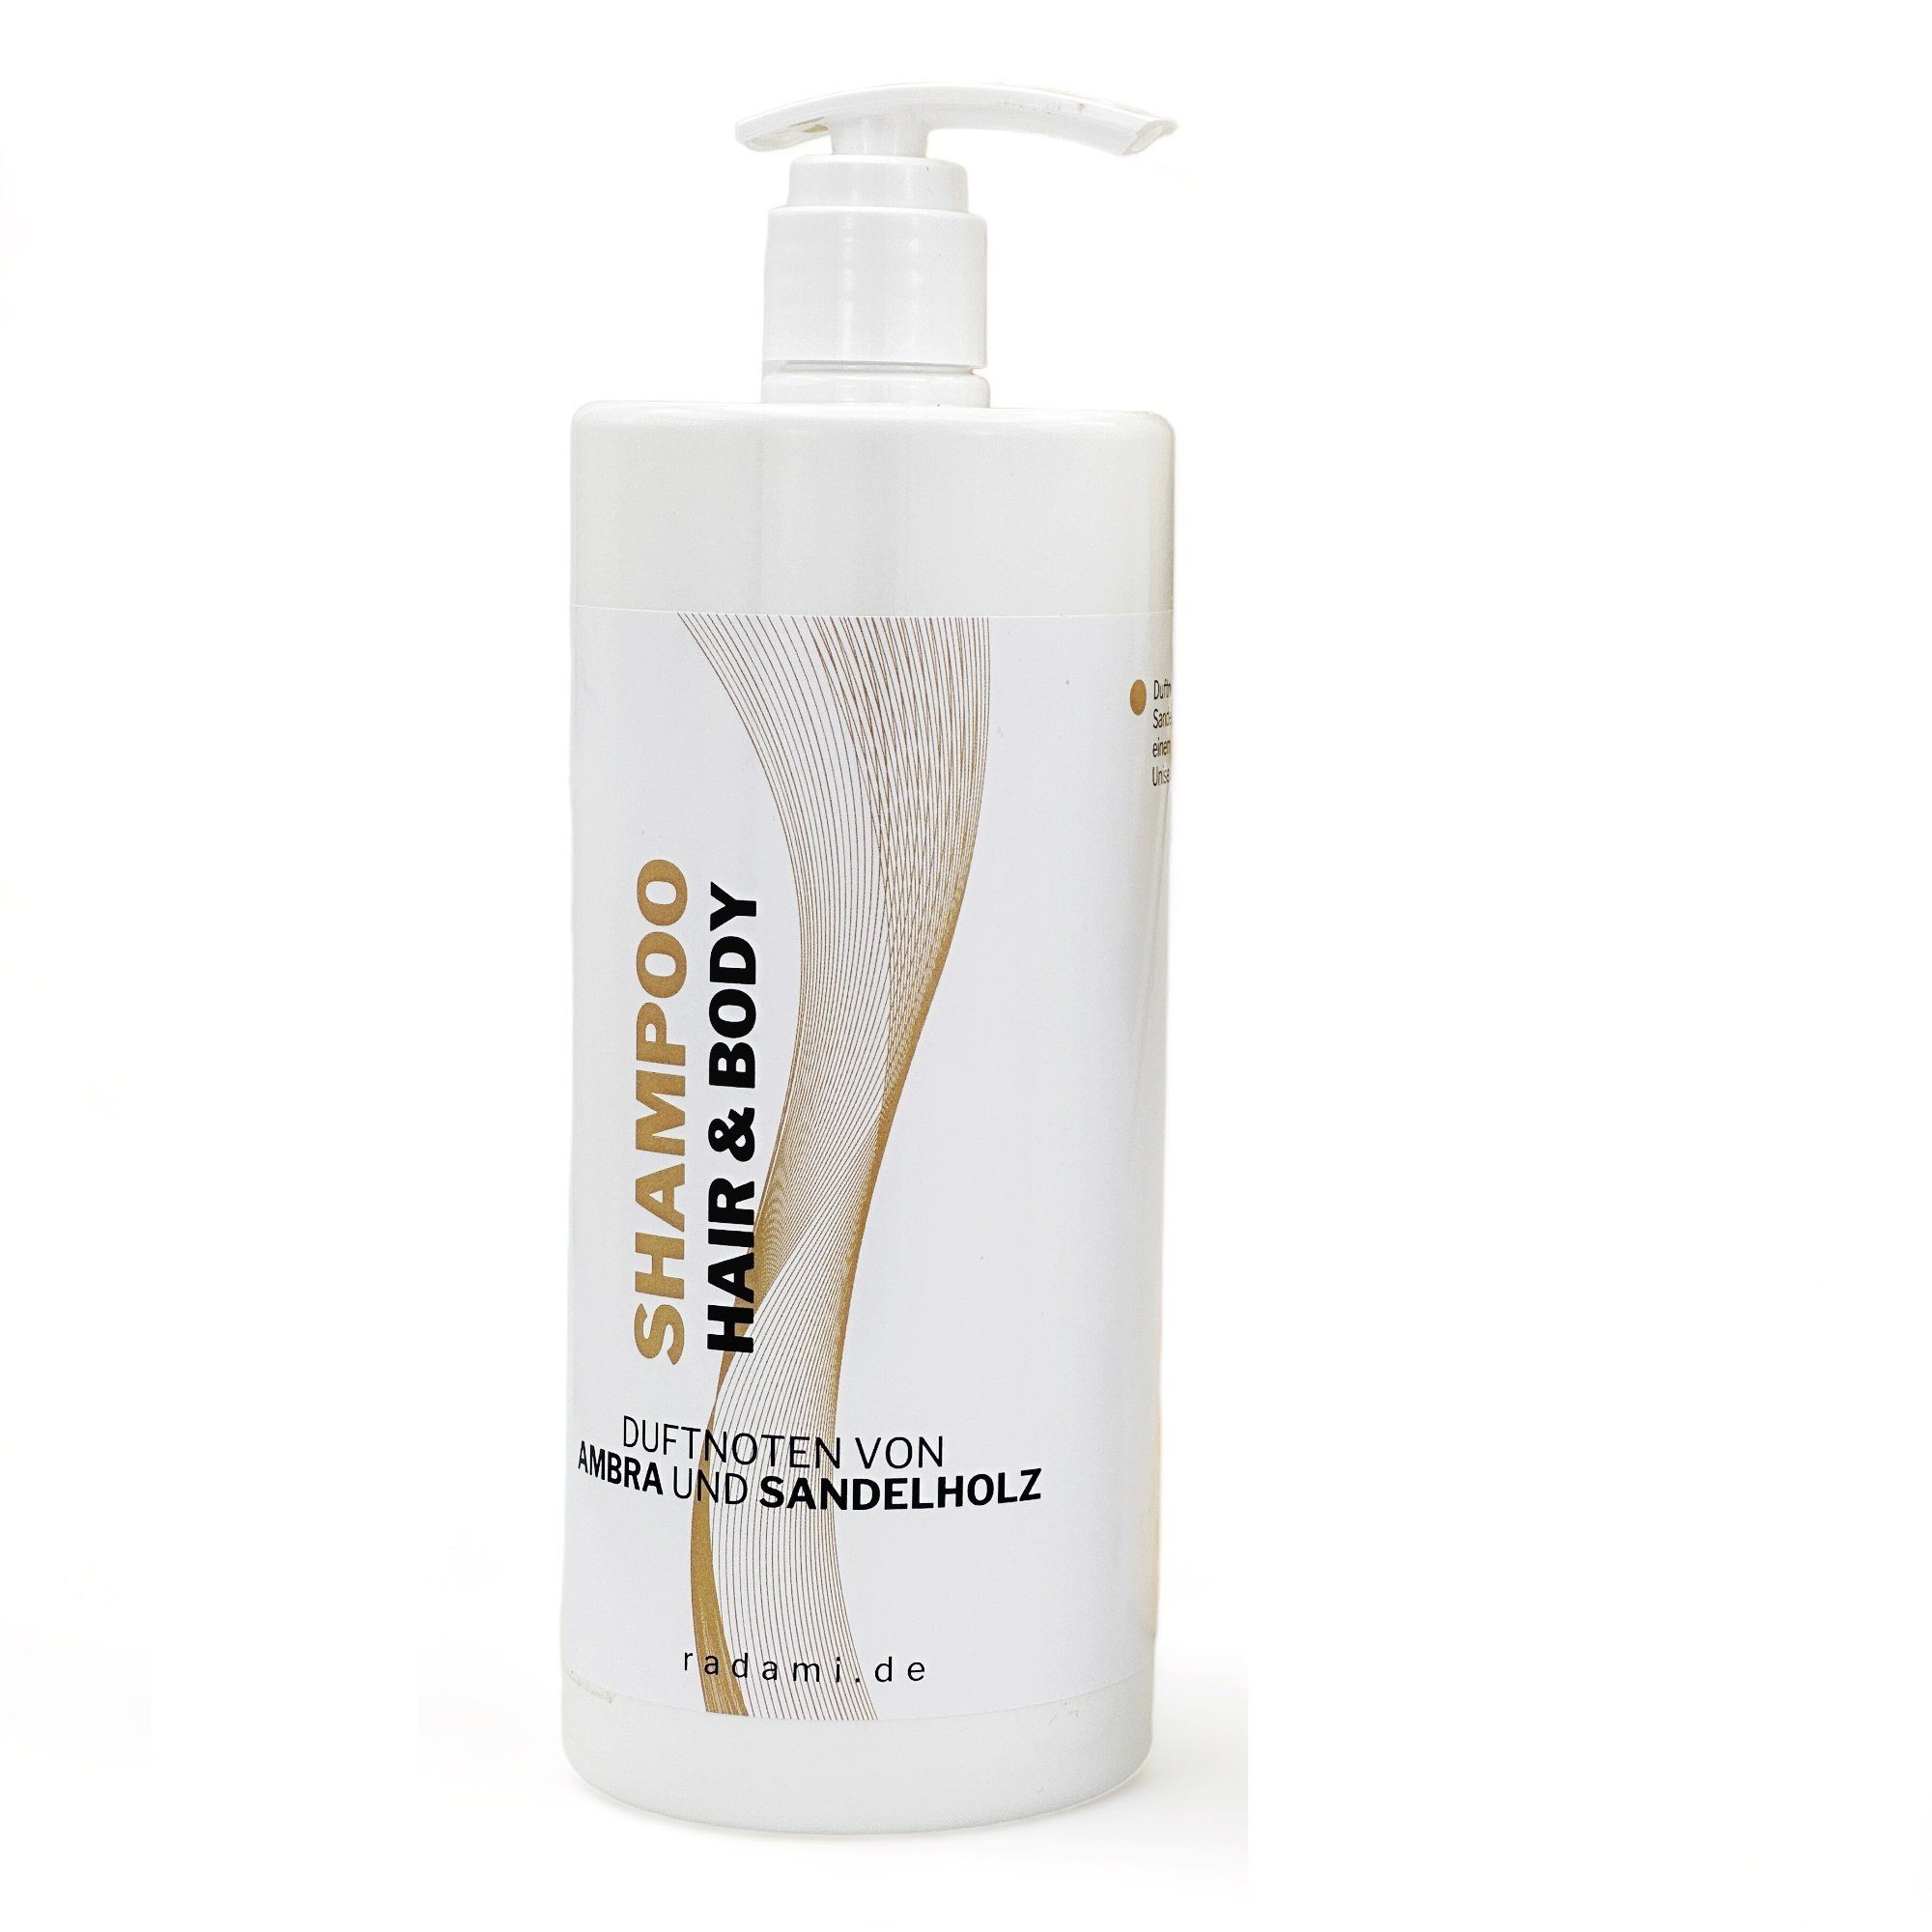 Radami Rohrreinigungspistole Shampoo Hair L Sandelholz / Duschgel 1 Duft Ambra Body und